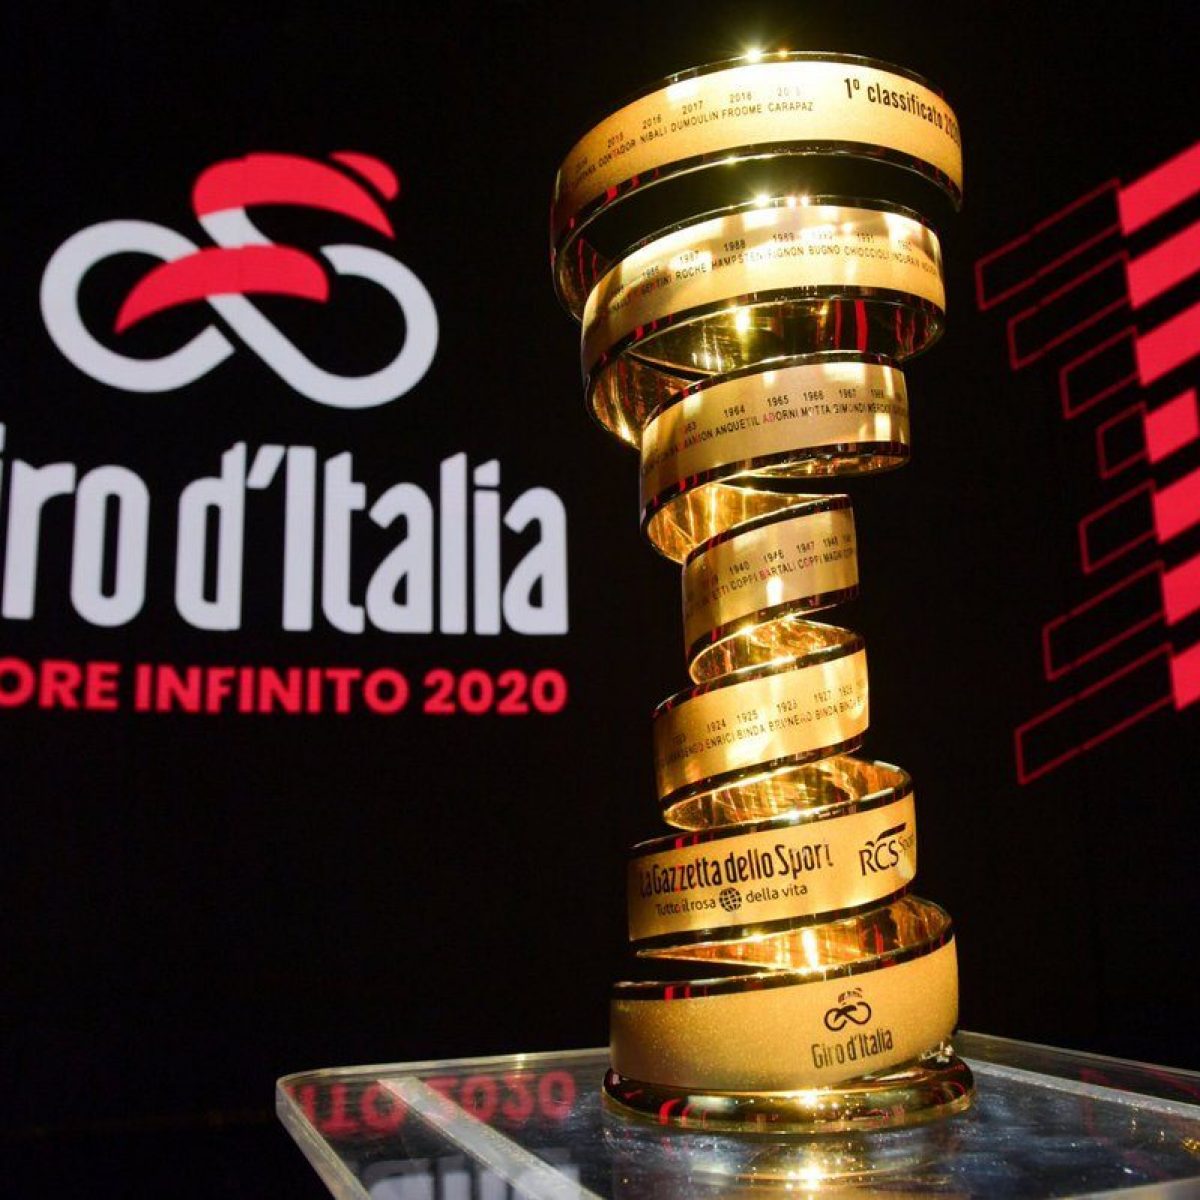 CICLISMO Giro d'Italia 2020, al via sabato 3 ottobre la 103° edizione